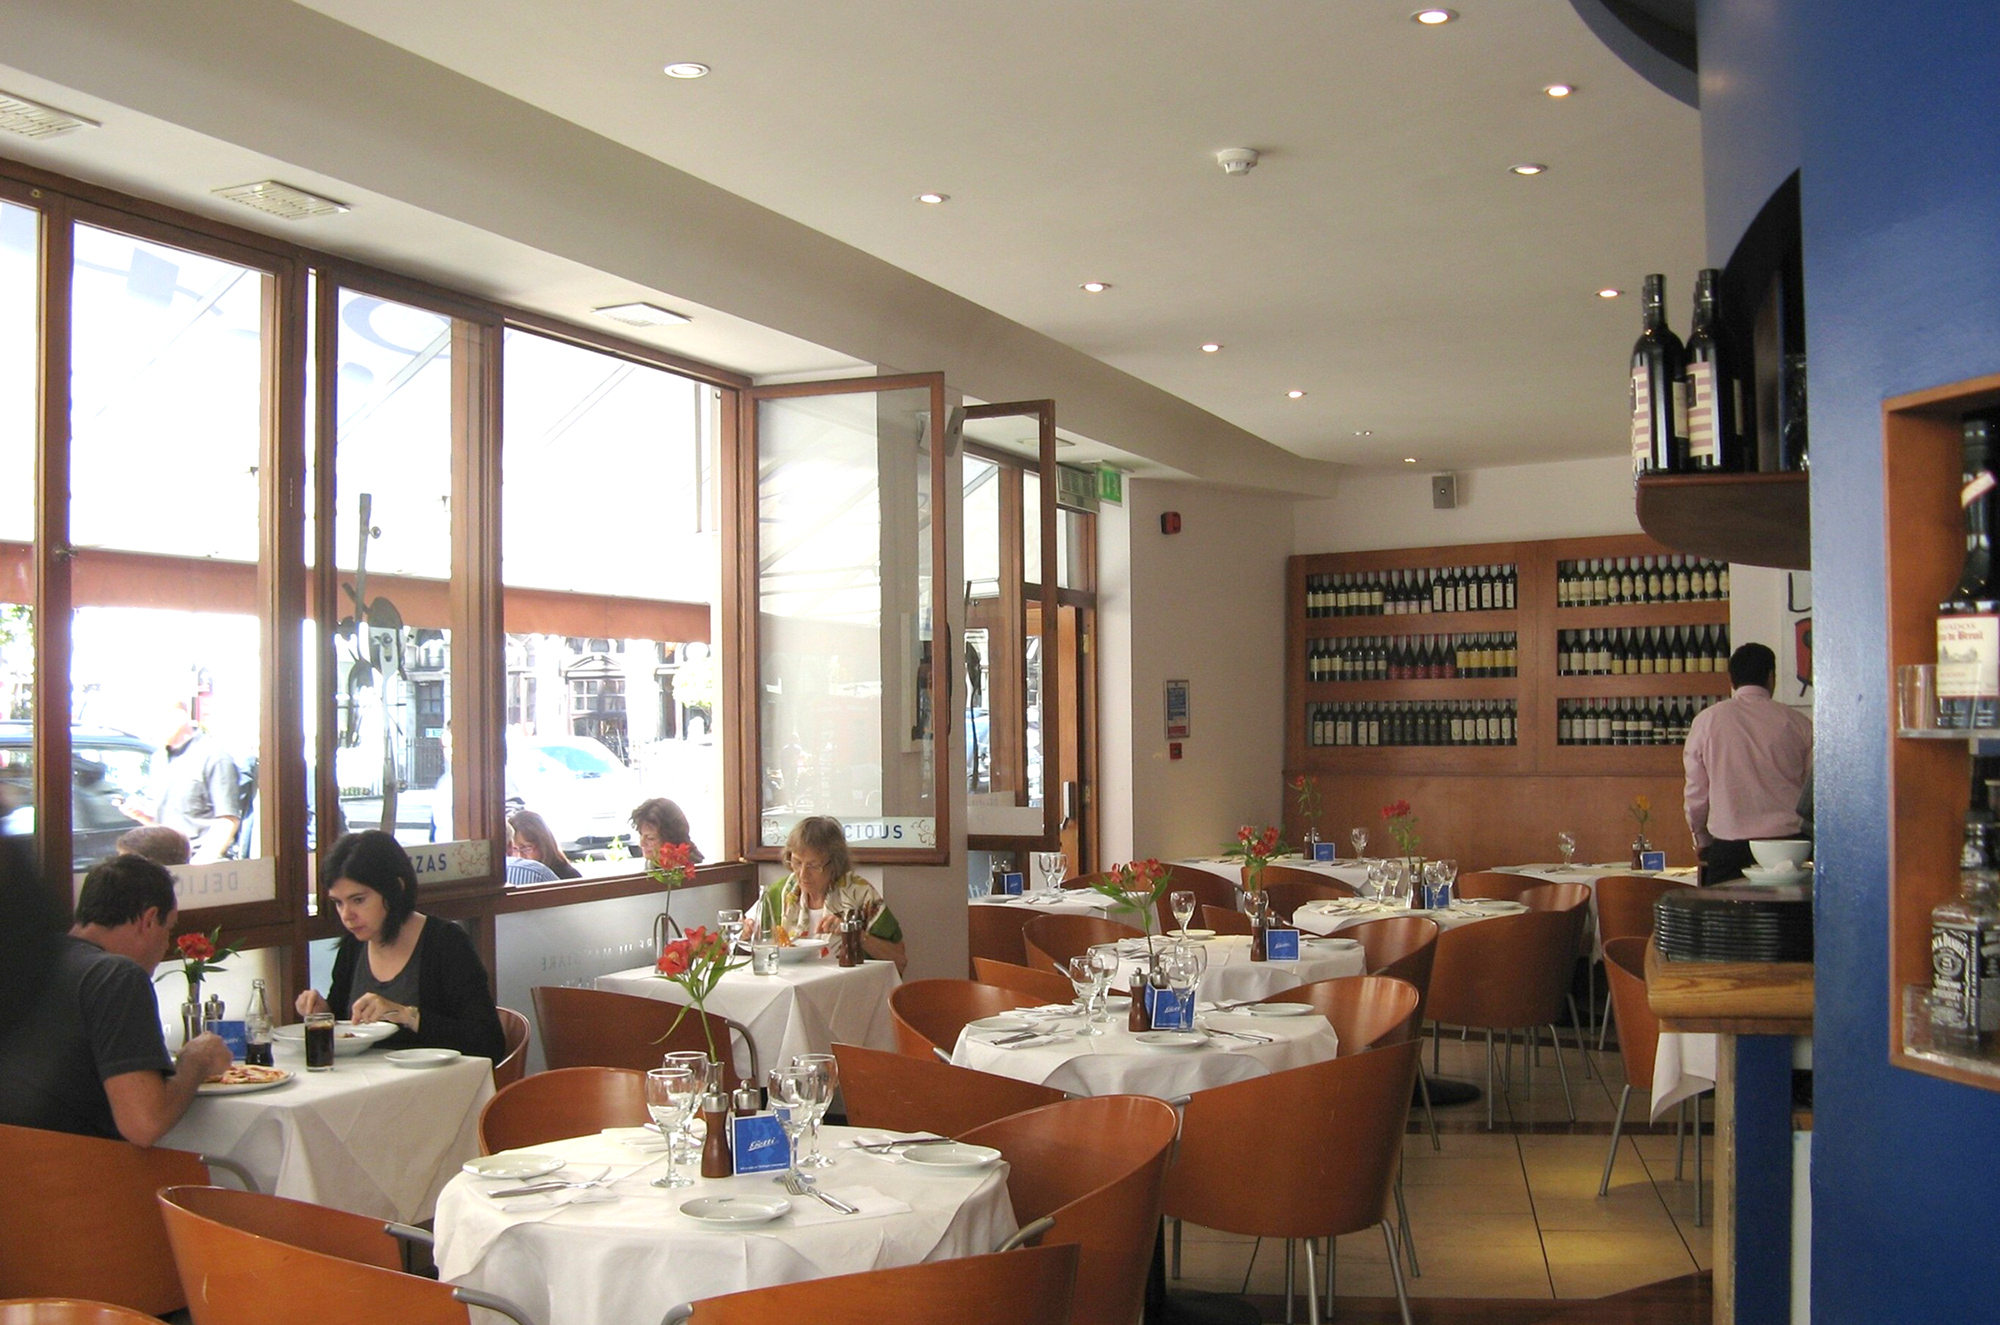 Getti Restaurant - Marylebone